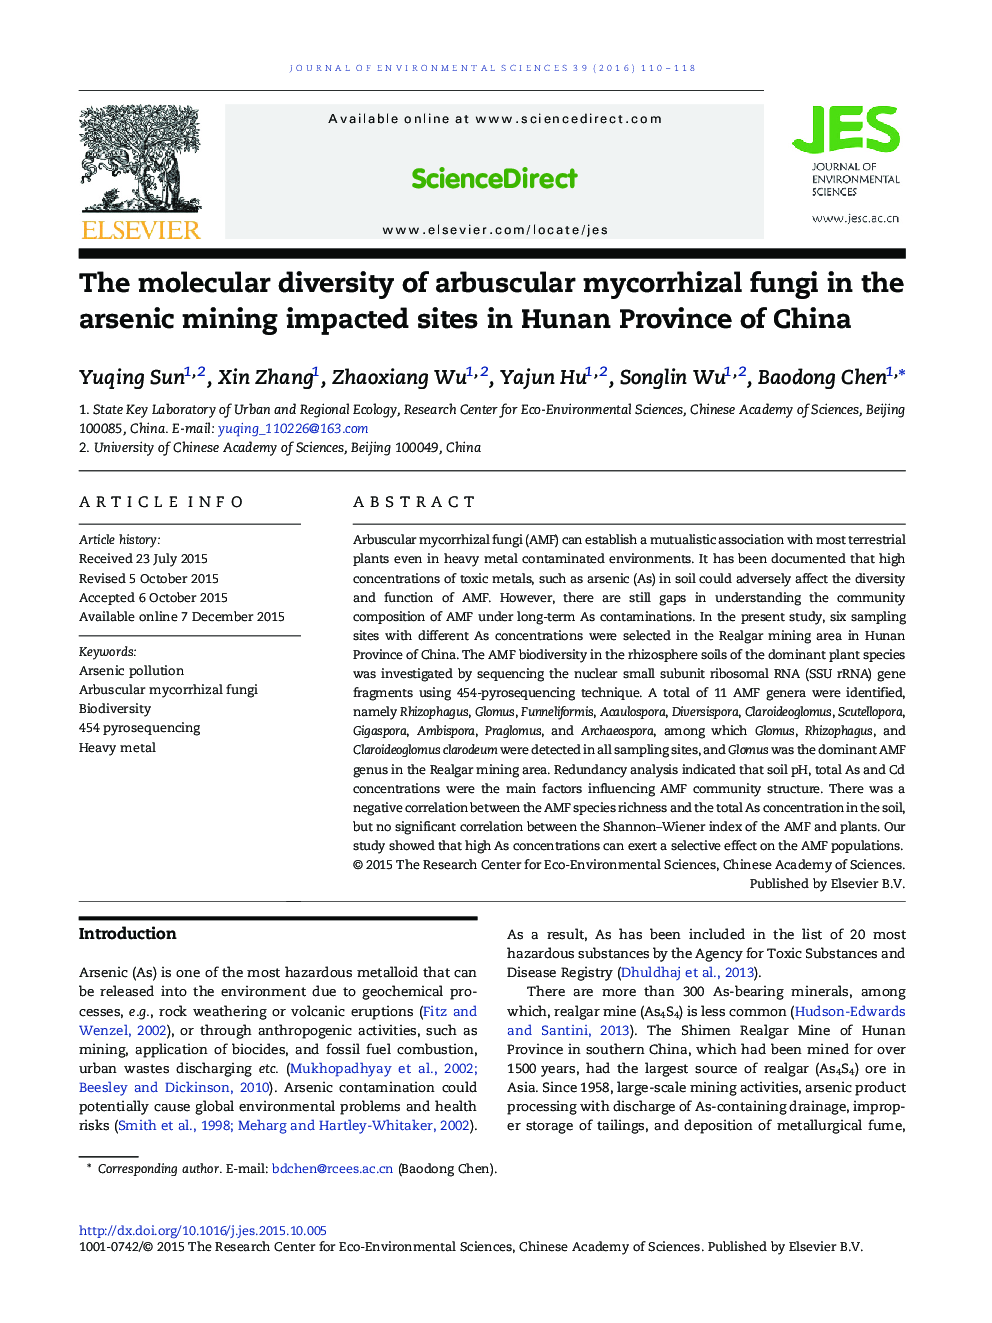 تنوع مولکولی قارچ های میکوریزا آربوسکولار در معدن آرسنیک تحت تاثیر قرار دادن سایت های استان هونان چین 